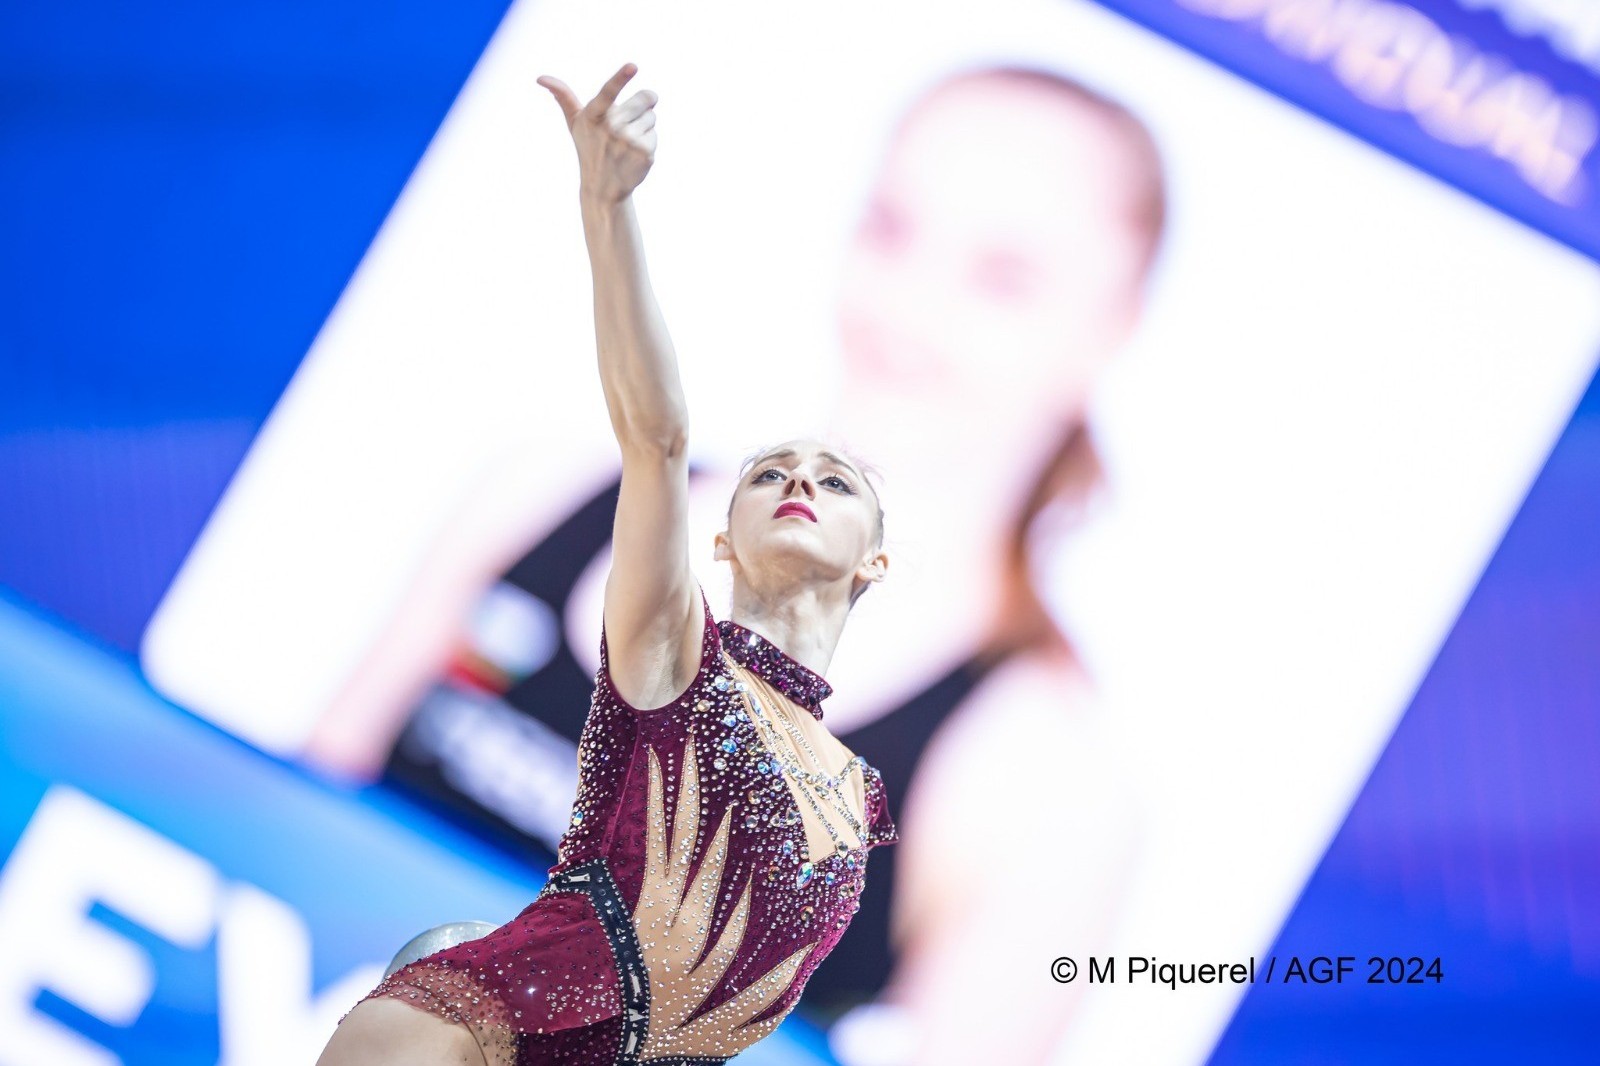 Bulgarian gymnast: "I was satisfied with my performance in Baku"